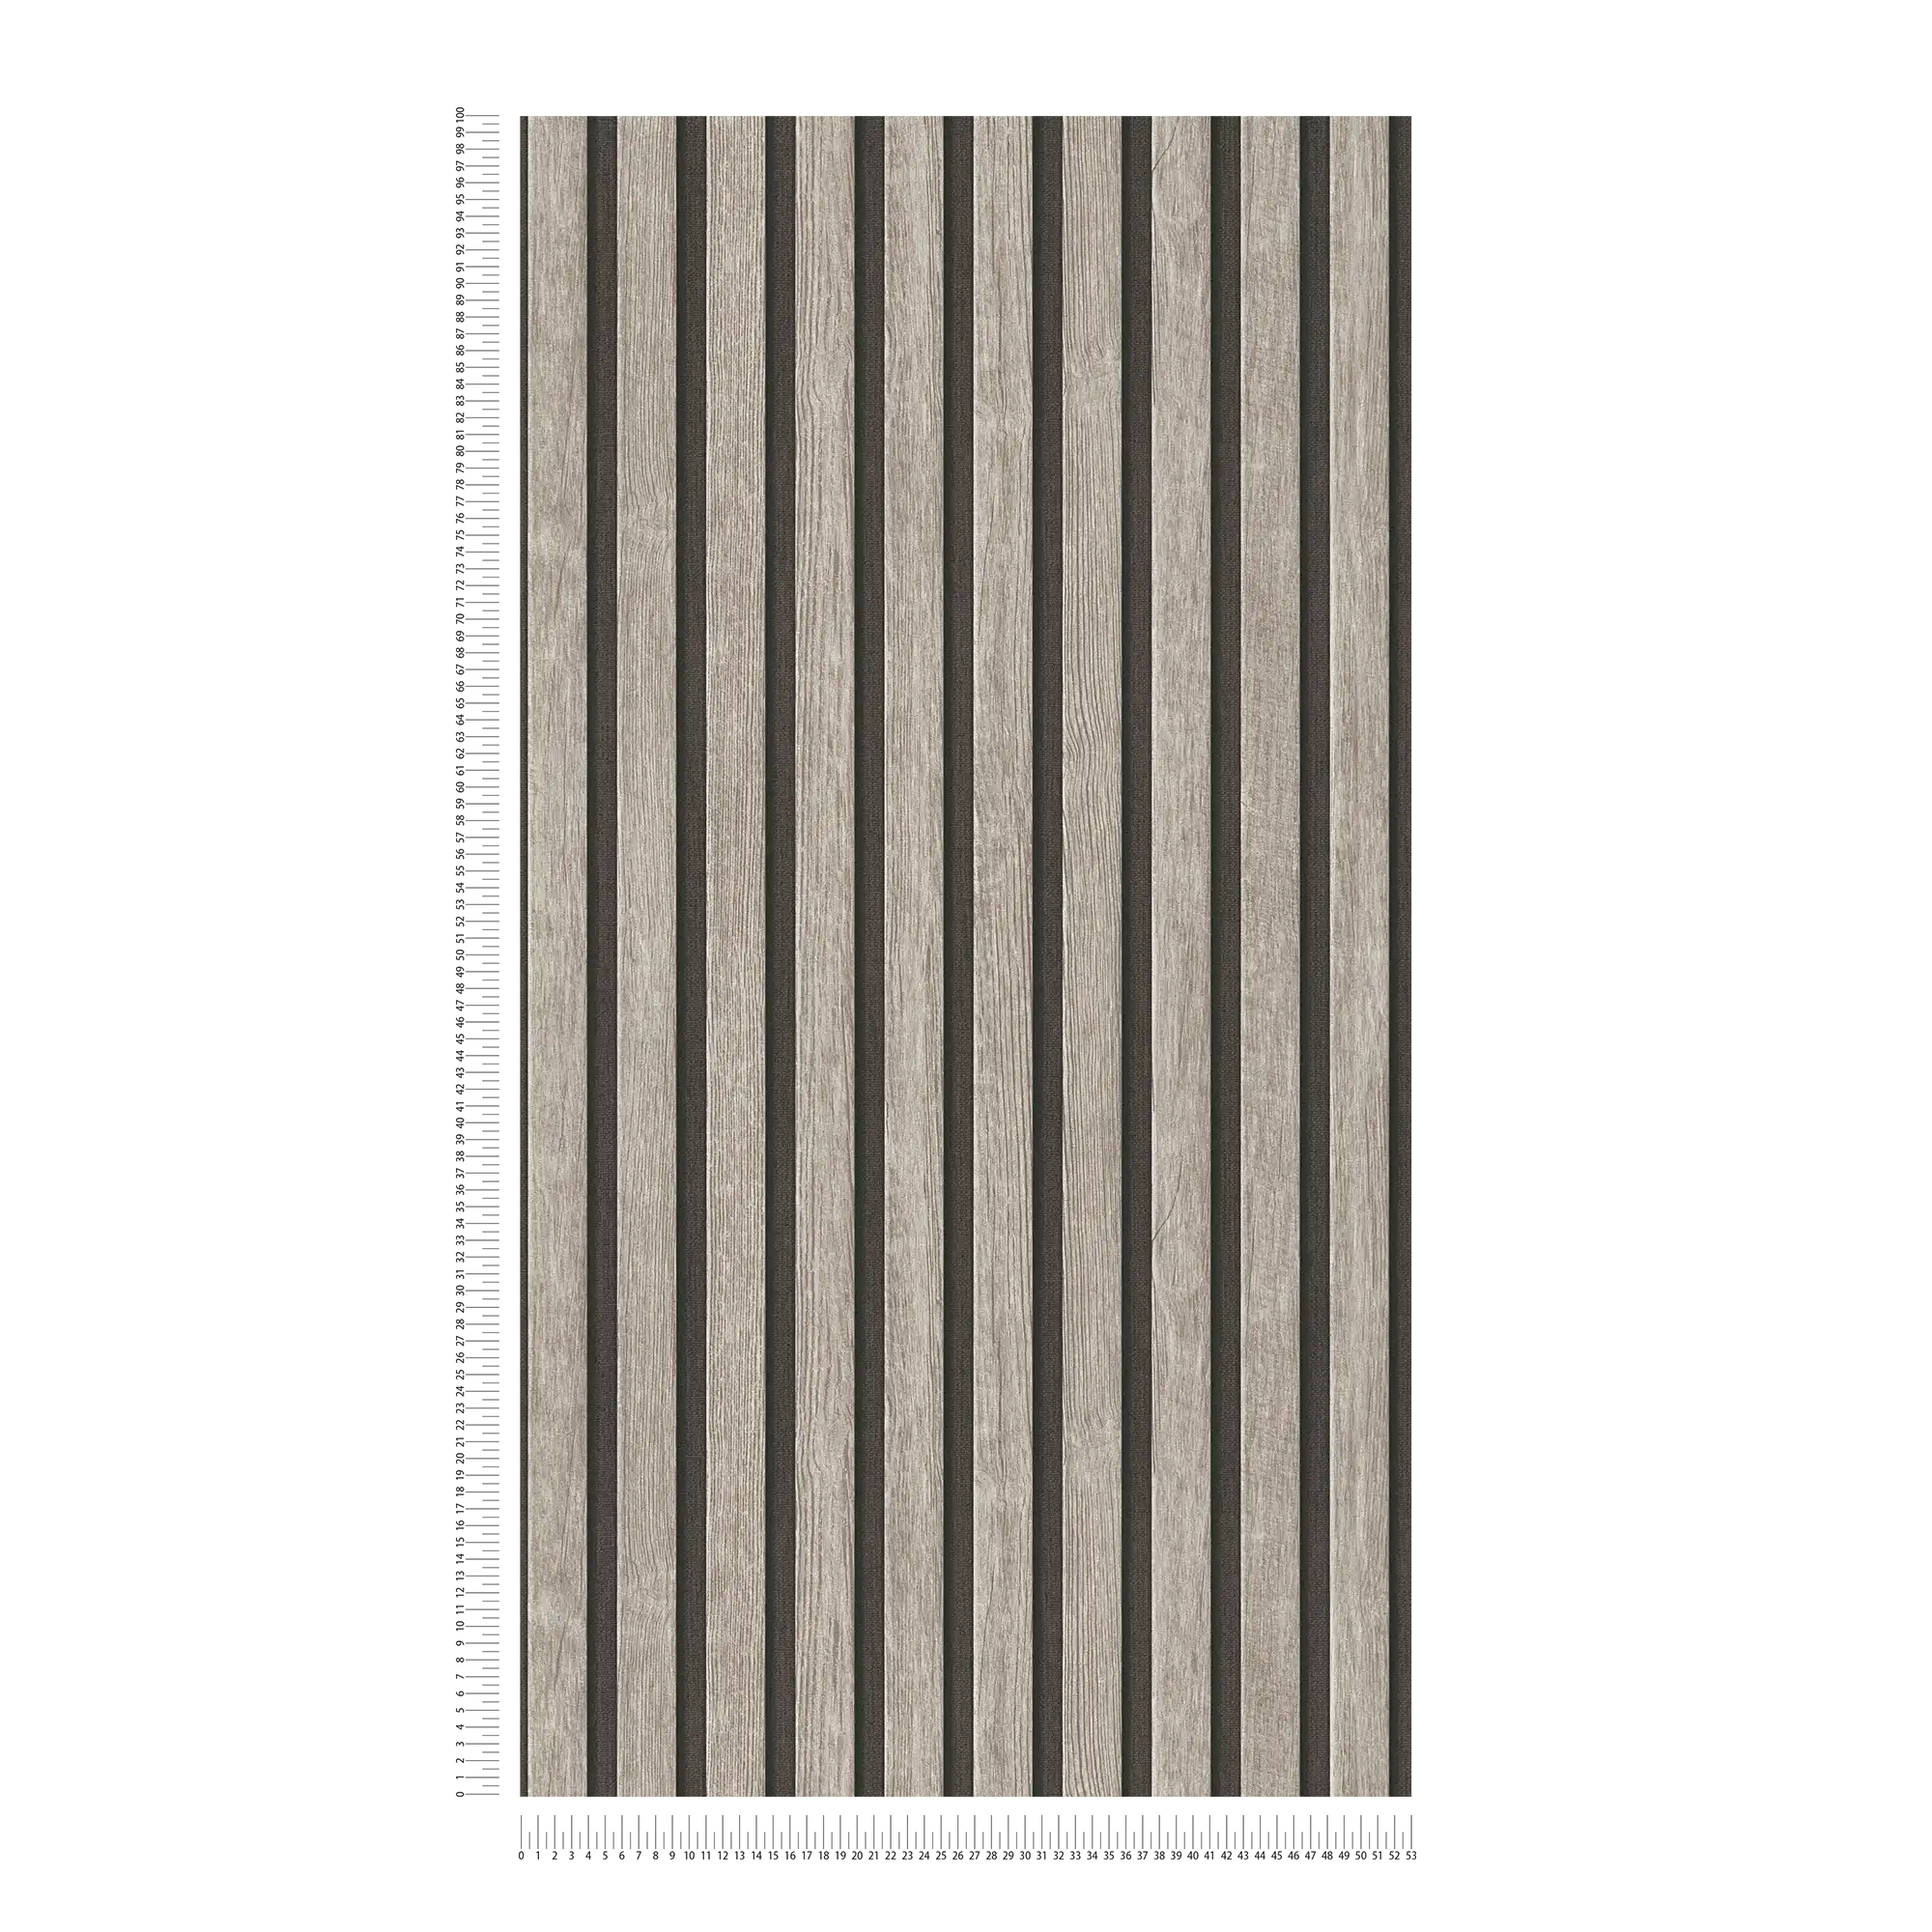             Carta da parati a pannelli di legno con struttura fine - grigio, nero
        